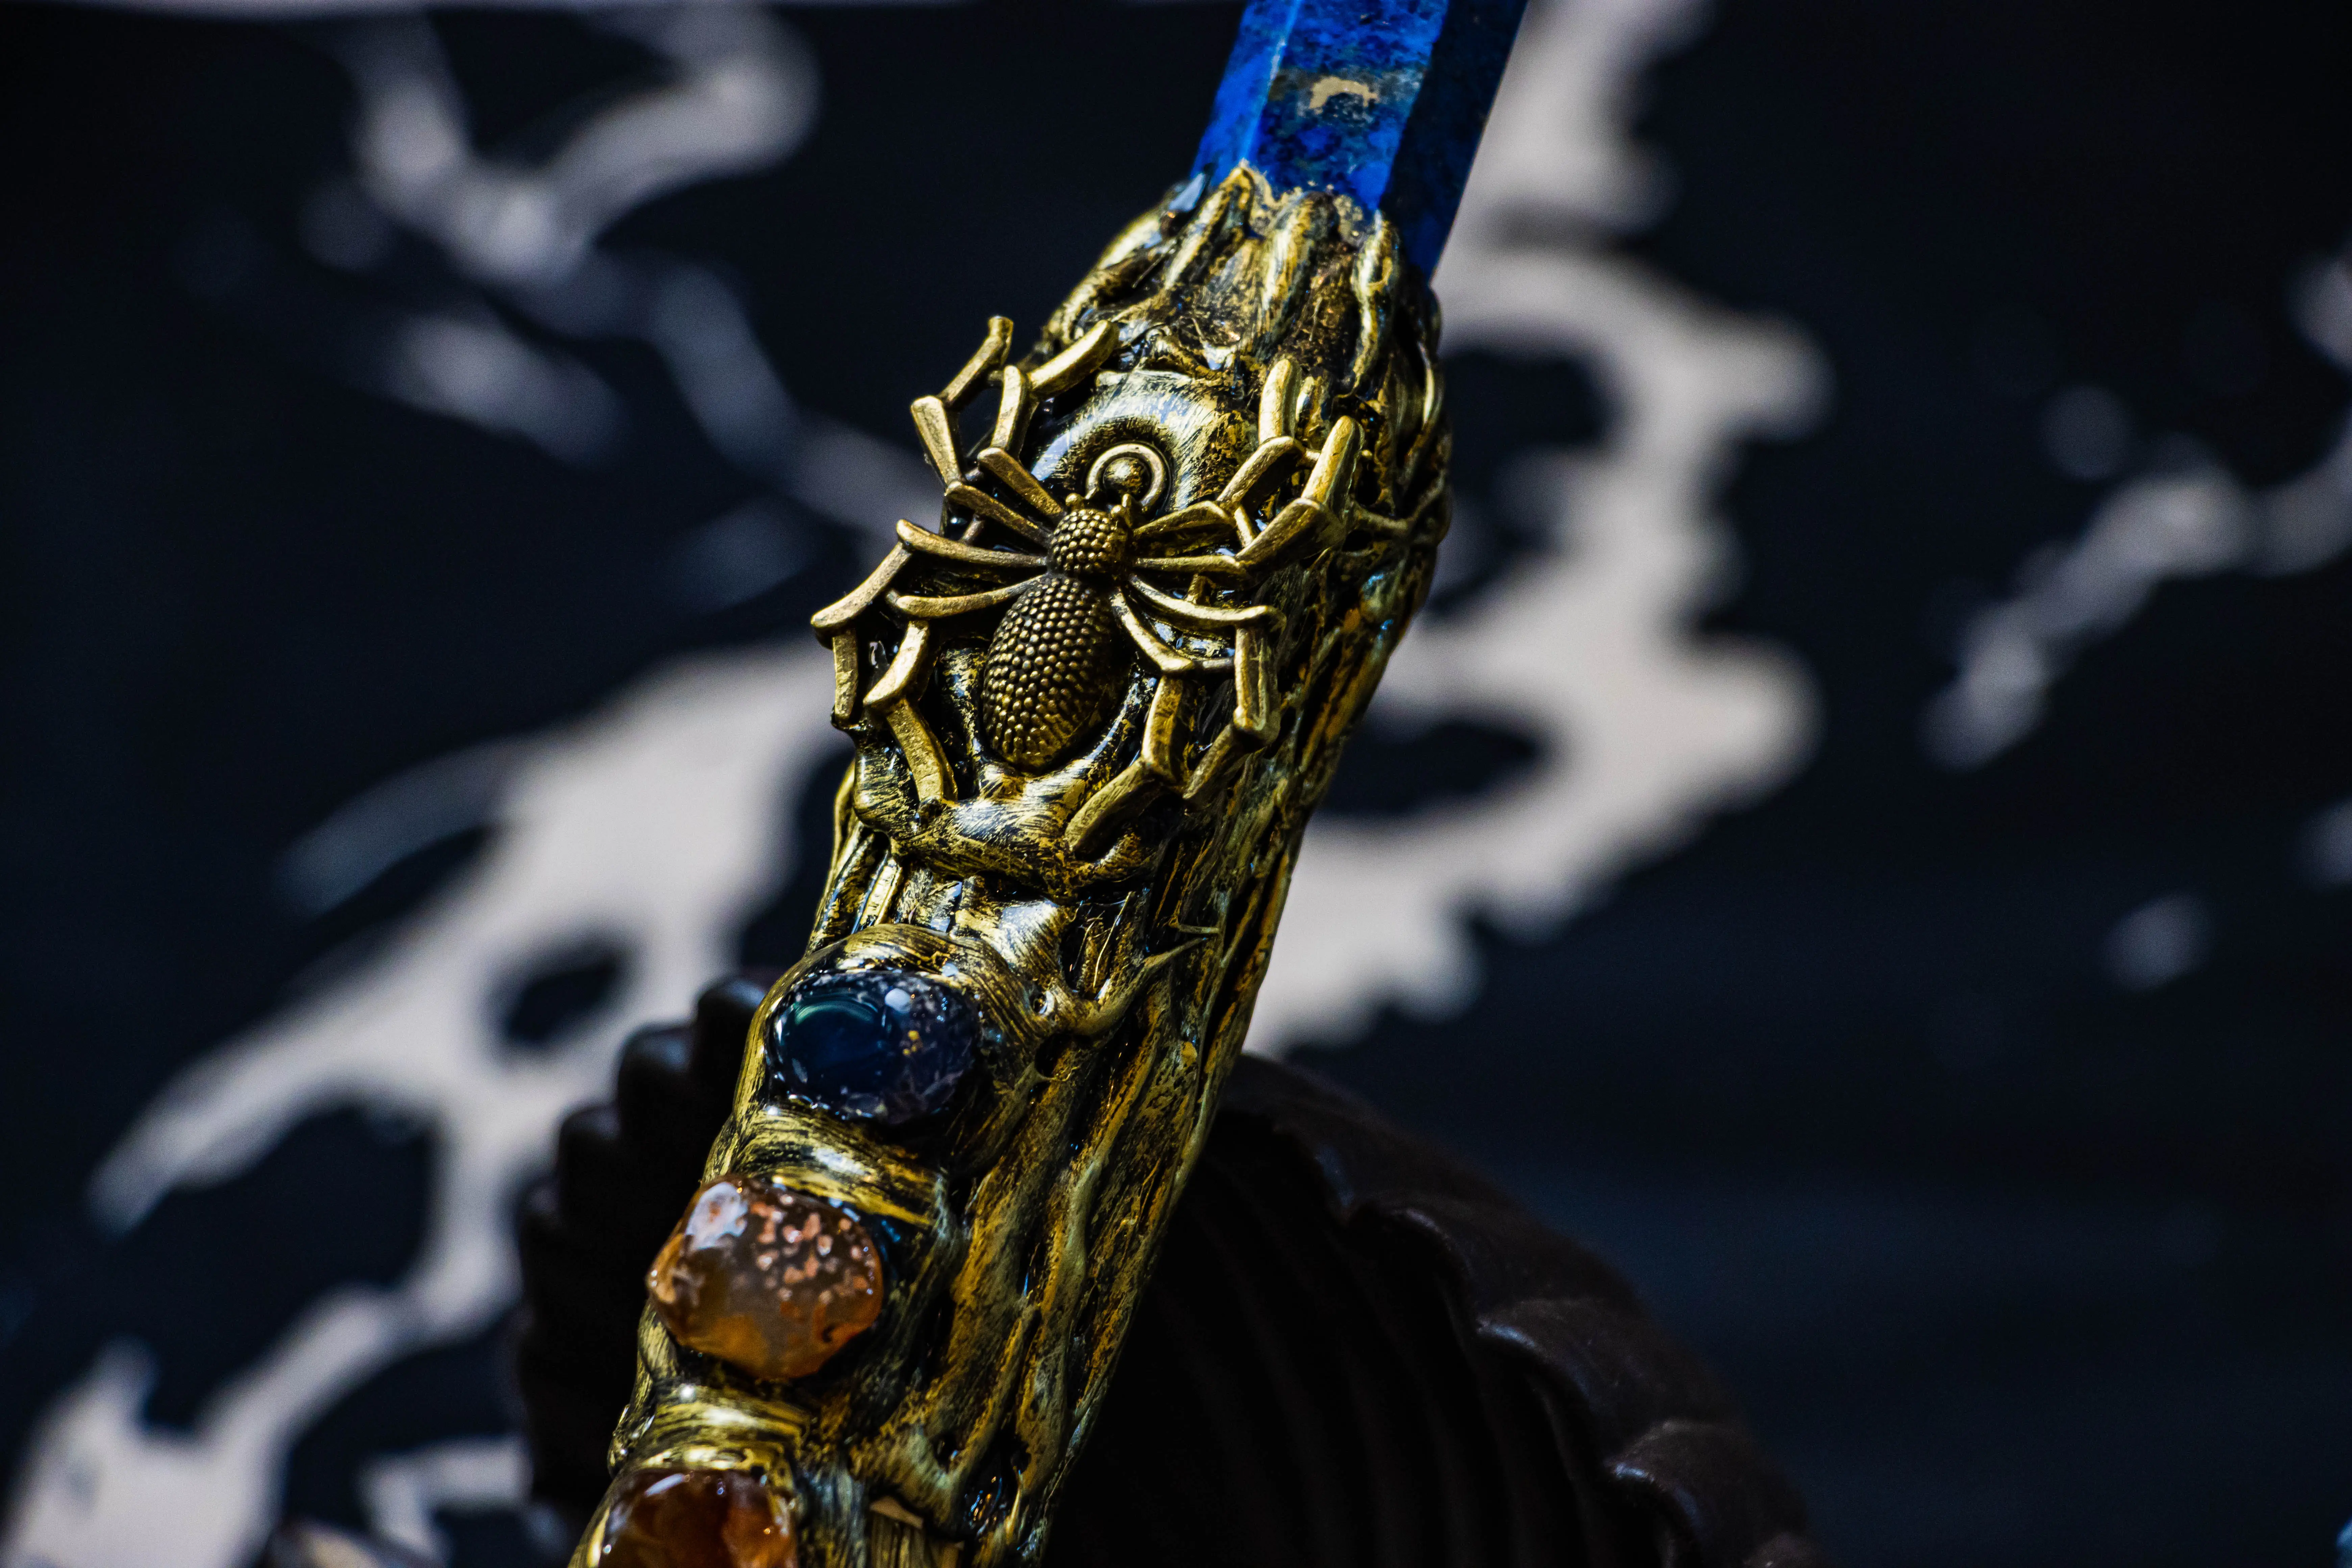 Kristall dekorierte Hexerei Türkis Gold Spider Alloy Magic Broom zu verkaufen